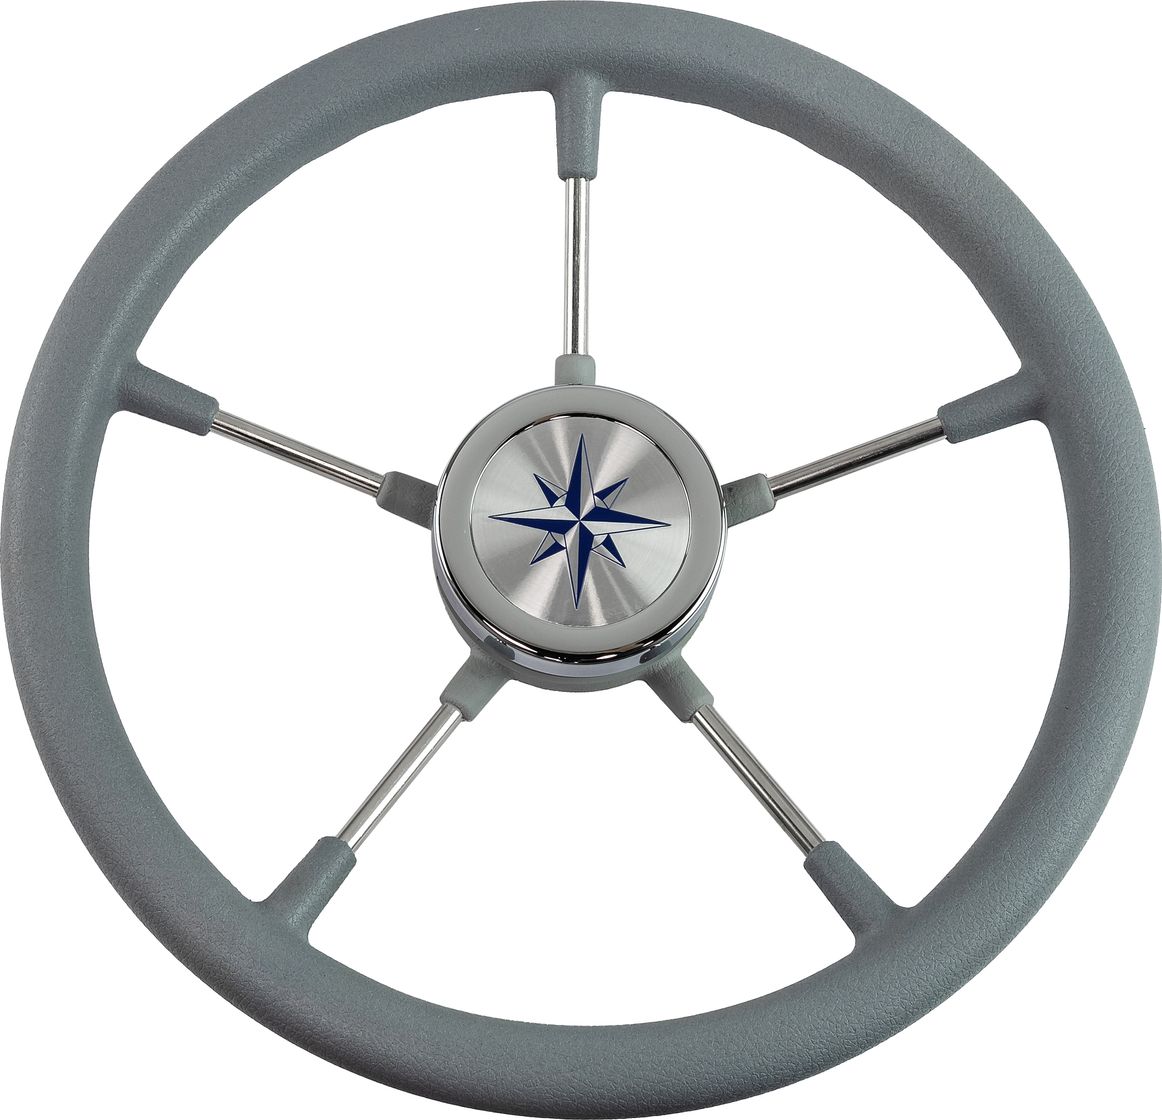 Рулевое колесо RIVA RSL обод серый, спицы серебряные д. 360 мм VN735022-03